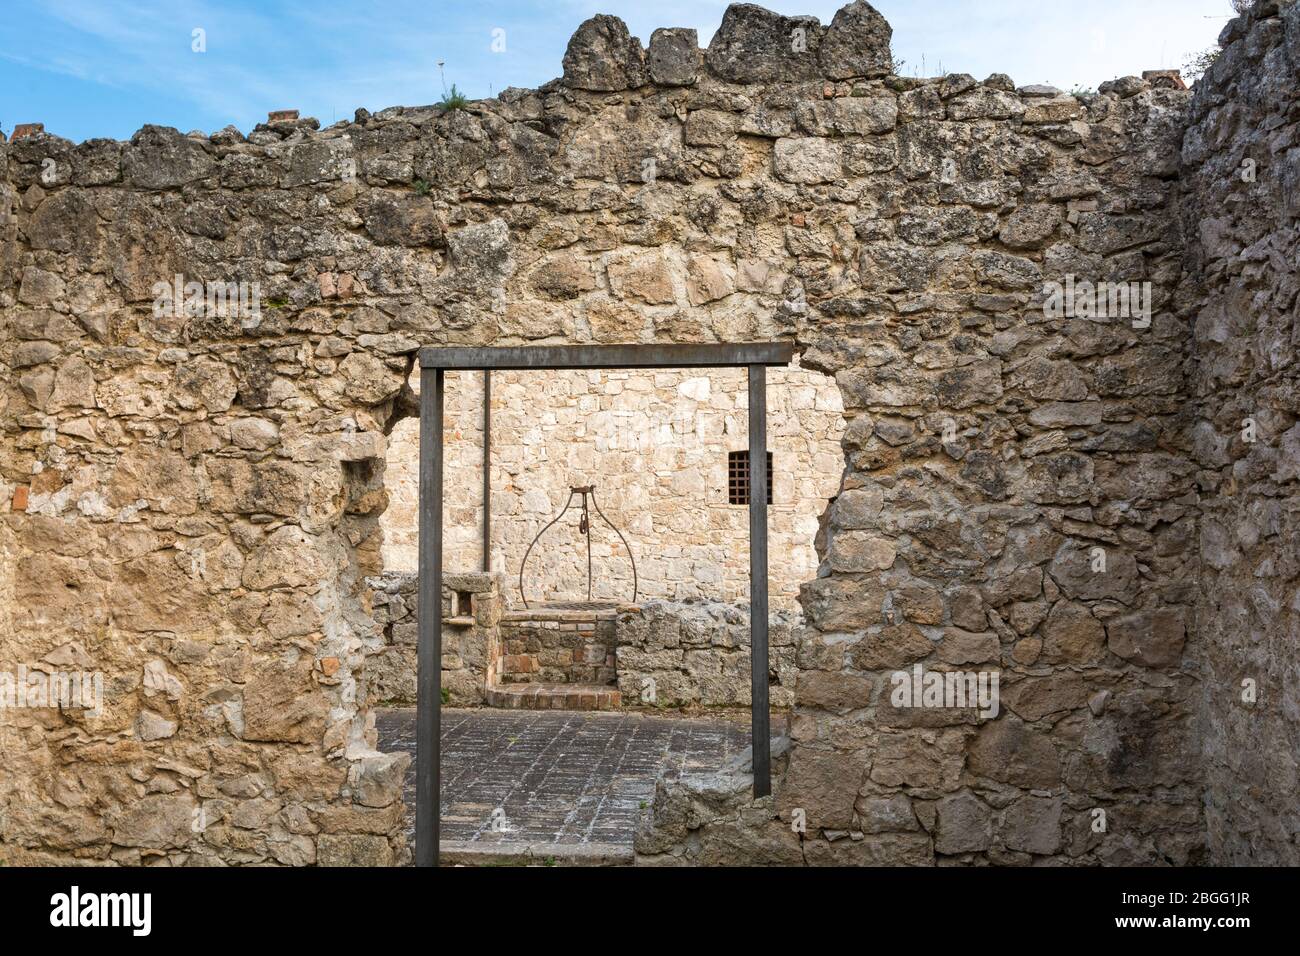 La Fortezza di Civitella del Tronto, Teramo: Fortezza medievale, esempio unico di architettura militare medievale in Abruzzo - Italia Foto Stock